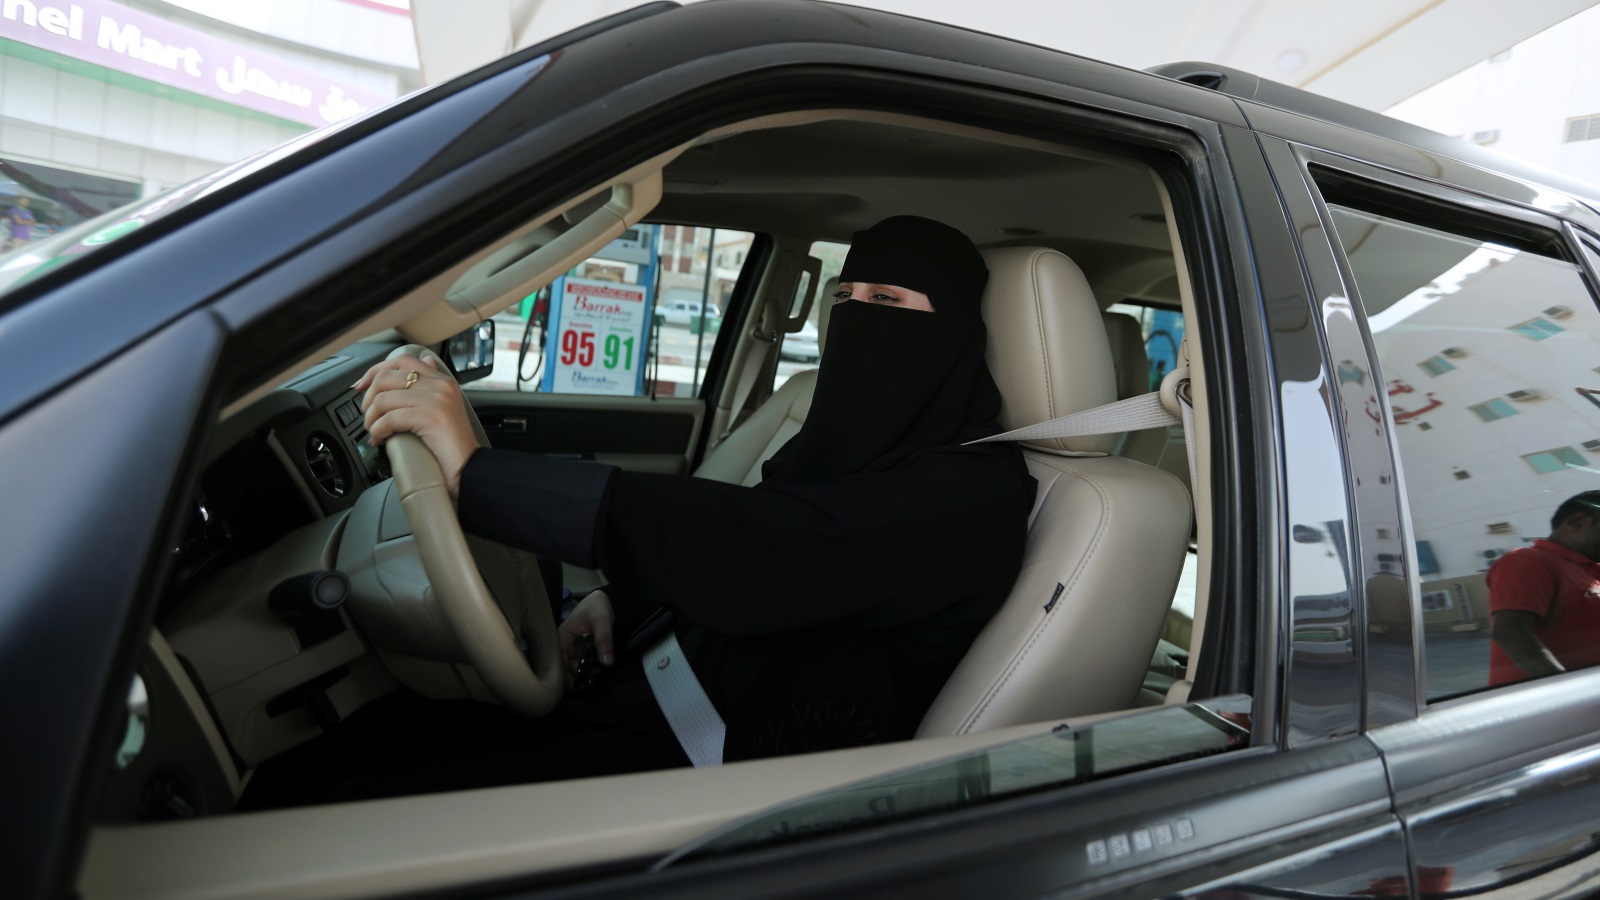 القرني لا يتوقف عن تجاهل كل ما يحدث للشعوب العربية، مع إصراره على المباركة بقيادة المرأة للسيارة في المملكة!